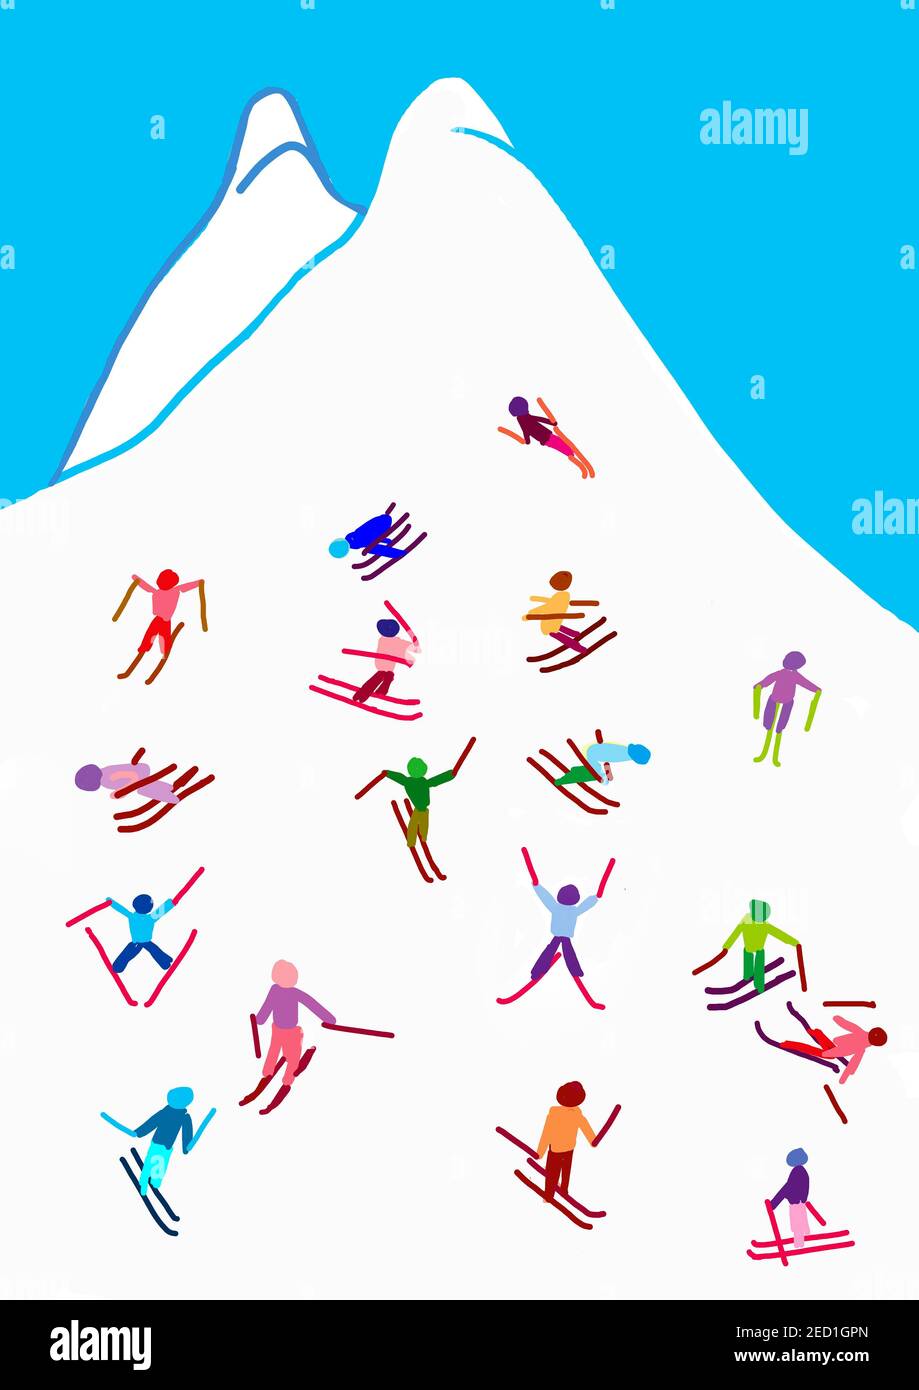 Illustration naïve, dessin d'enfants, skieur sur la pente, sports d'hiver Banque D'Images